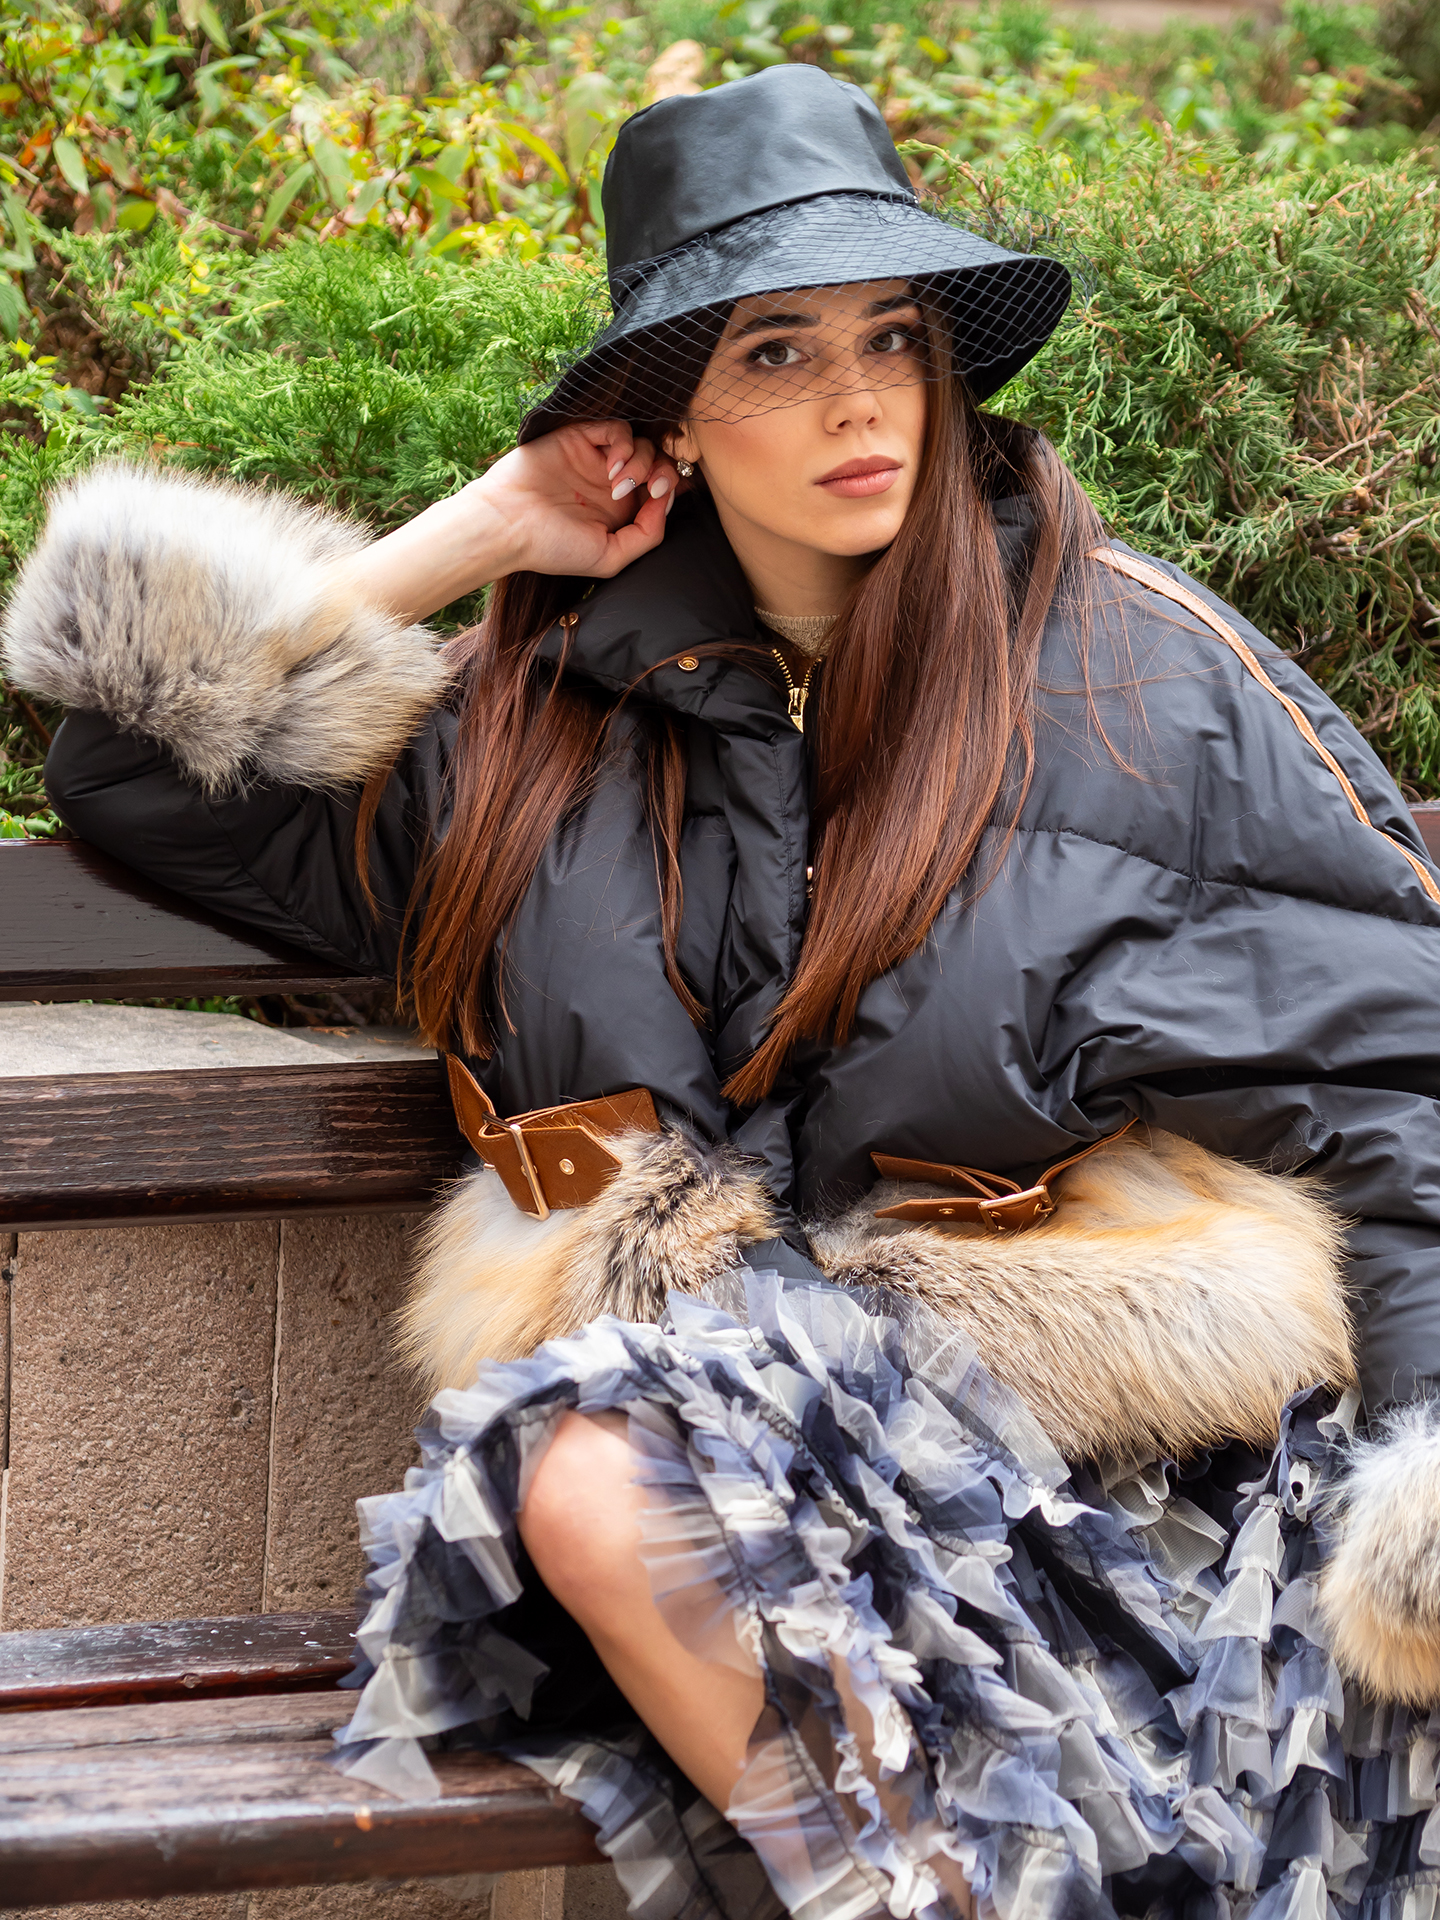 Дамско пухено яке с джобове от лисица